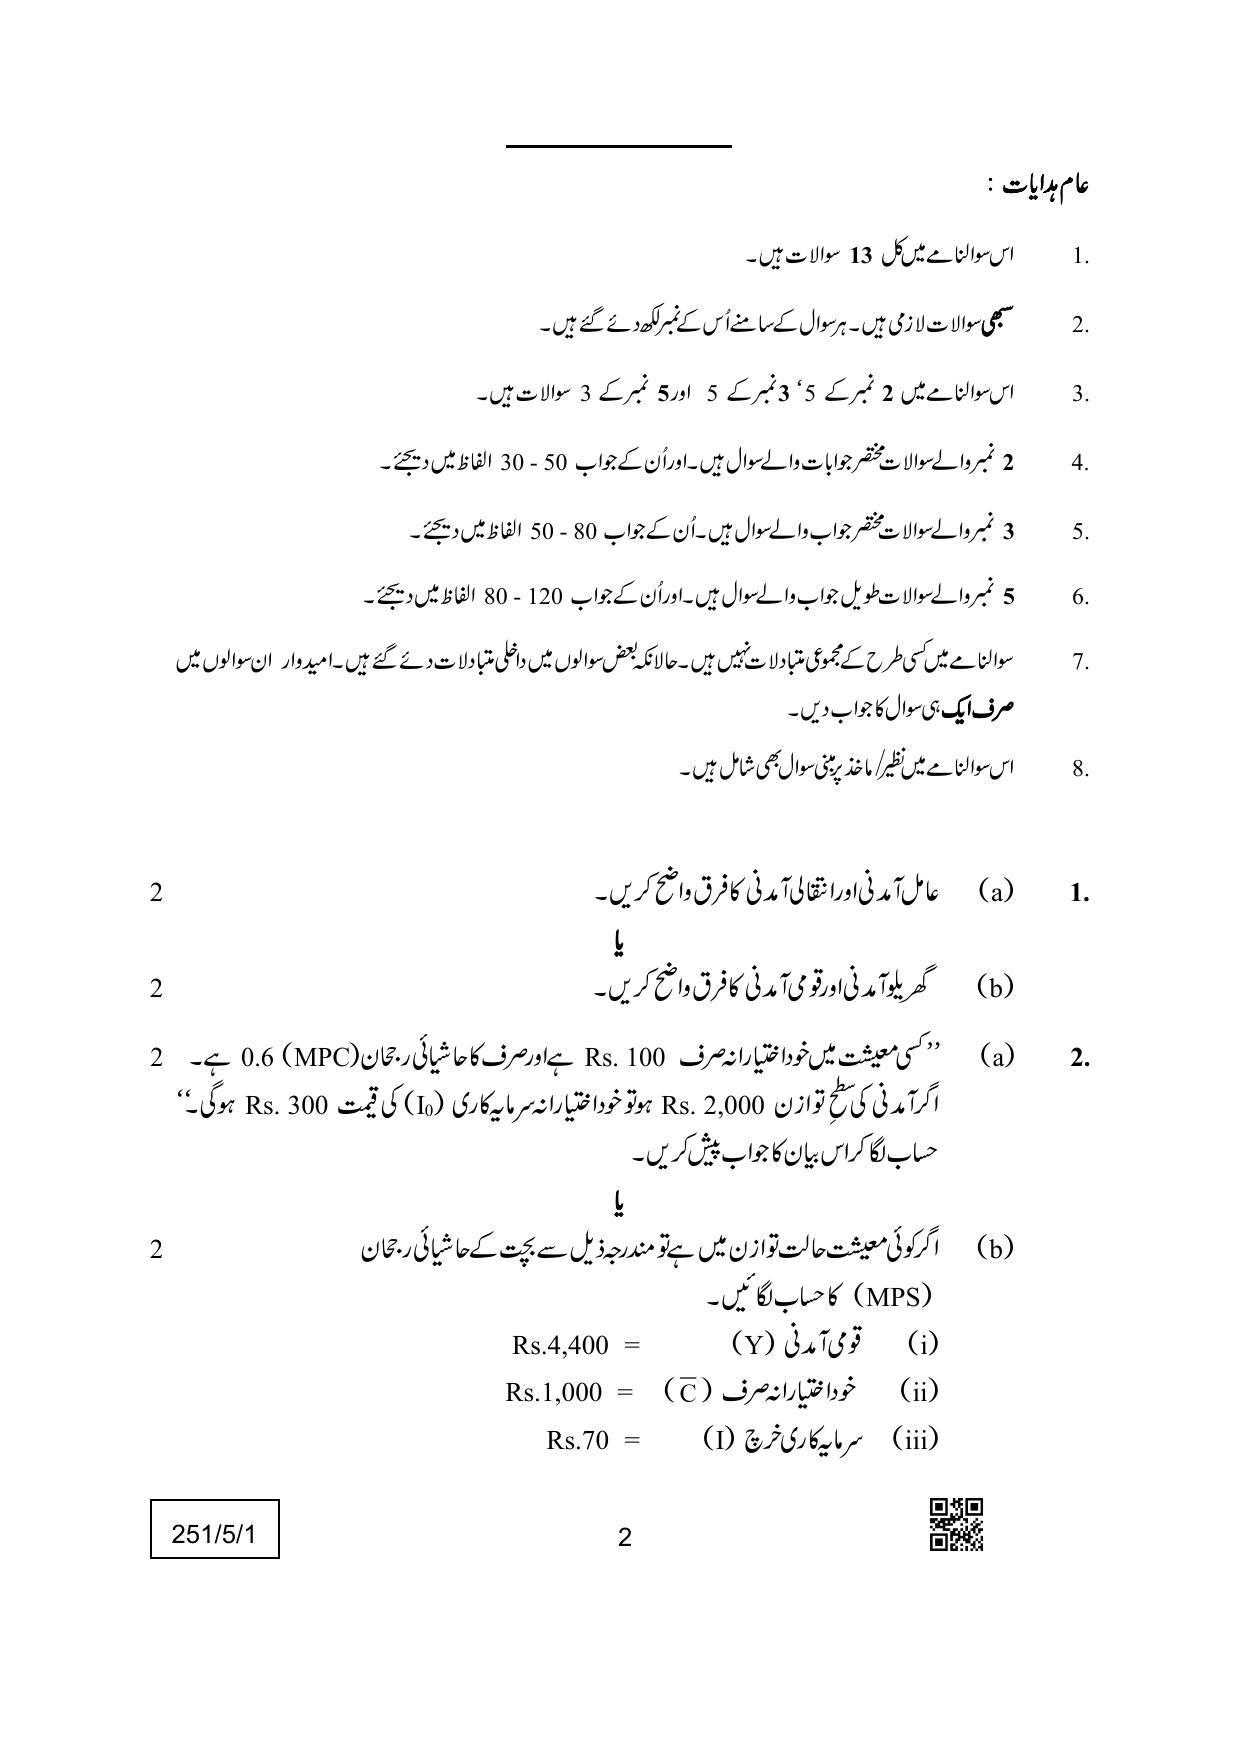 CBSE Class 12 251-5-1 (Economics) Urdu Version 2022 Question Paper - Page 2